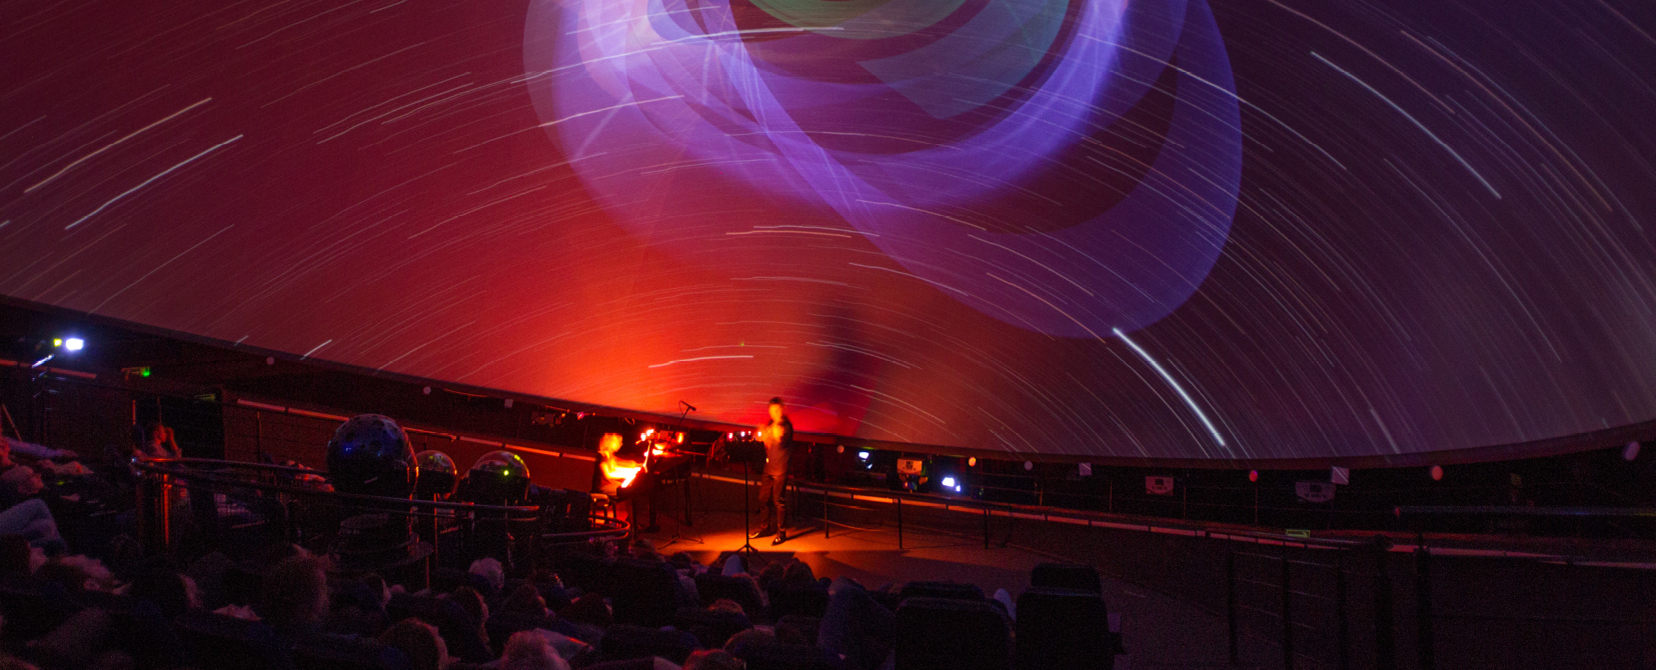 Widok sceny pod kopułą Planetarium, wszystko jest w czerwonym świetle, na scenie kobieta przy fortepianie i mężczyzna gra na skrzypcach.